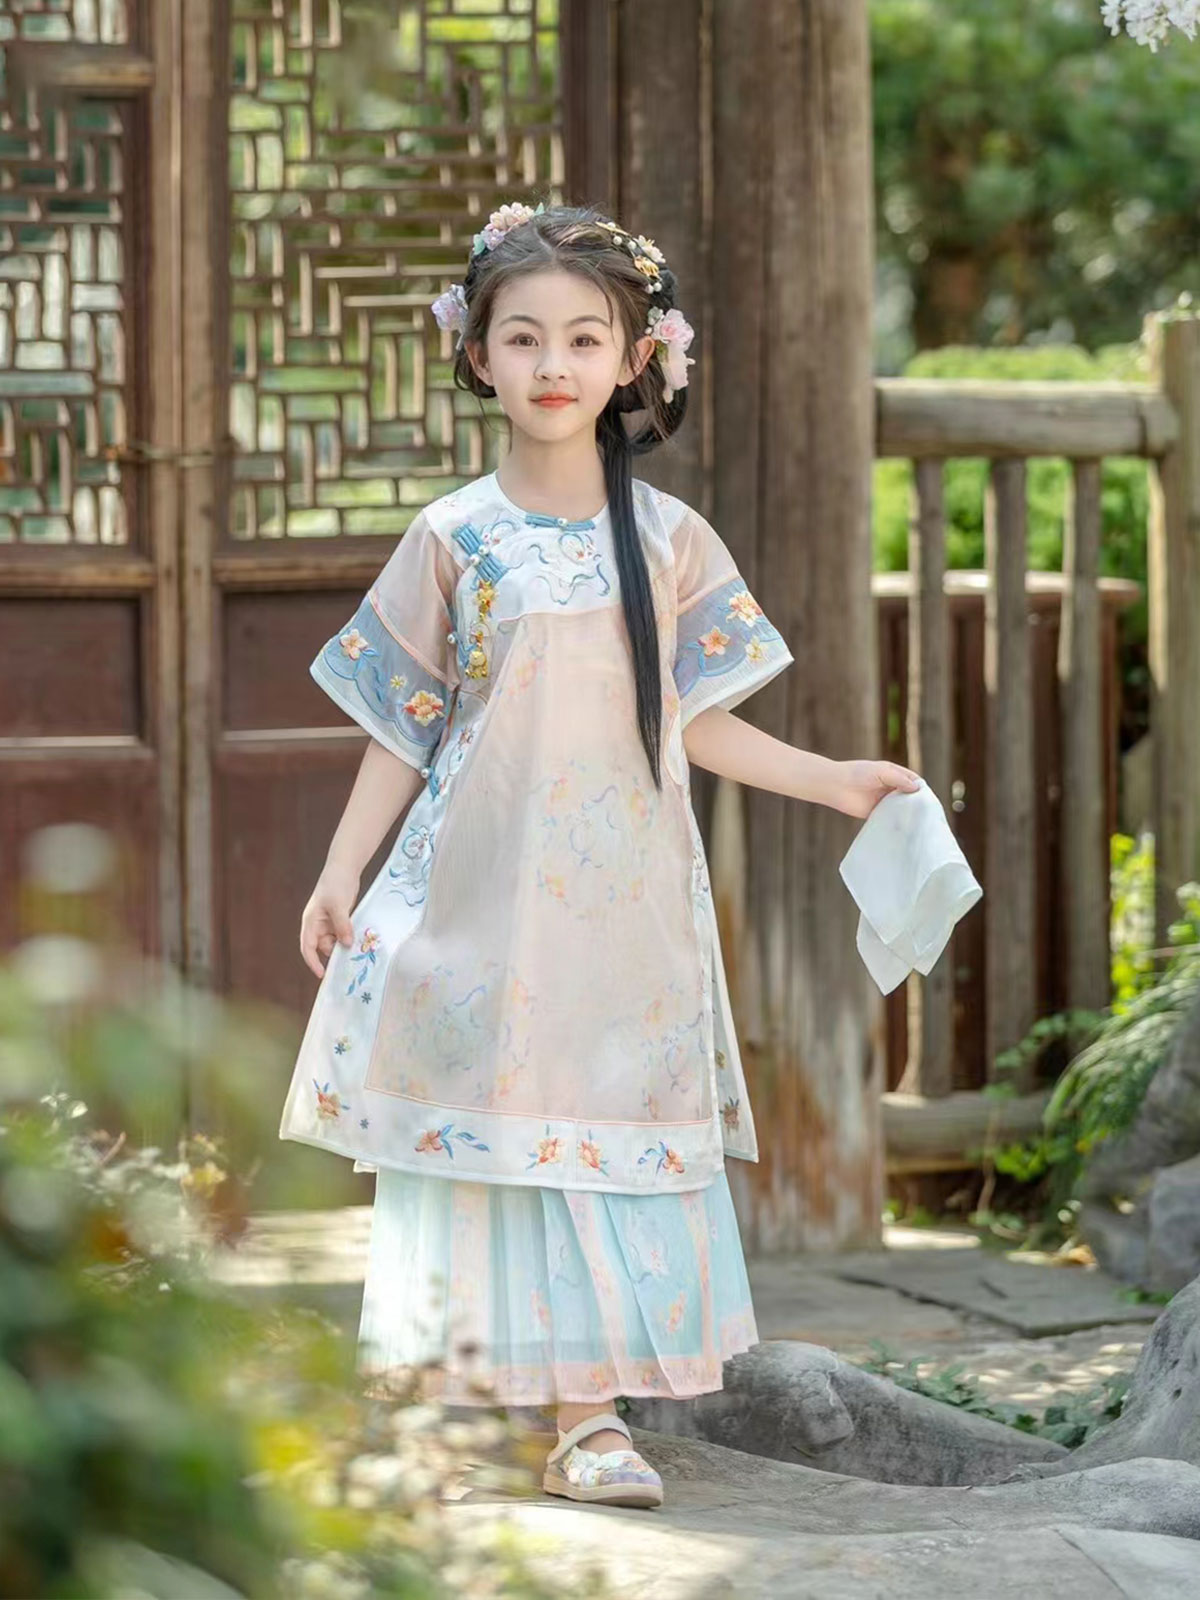 伊娃布衣夏季新款高端汉服女童格格服旗袍短袖中国古风轻薄儿童装